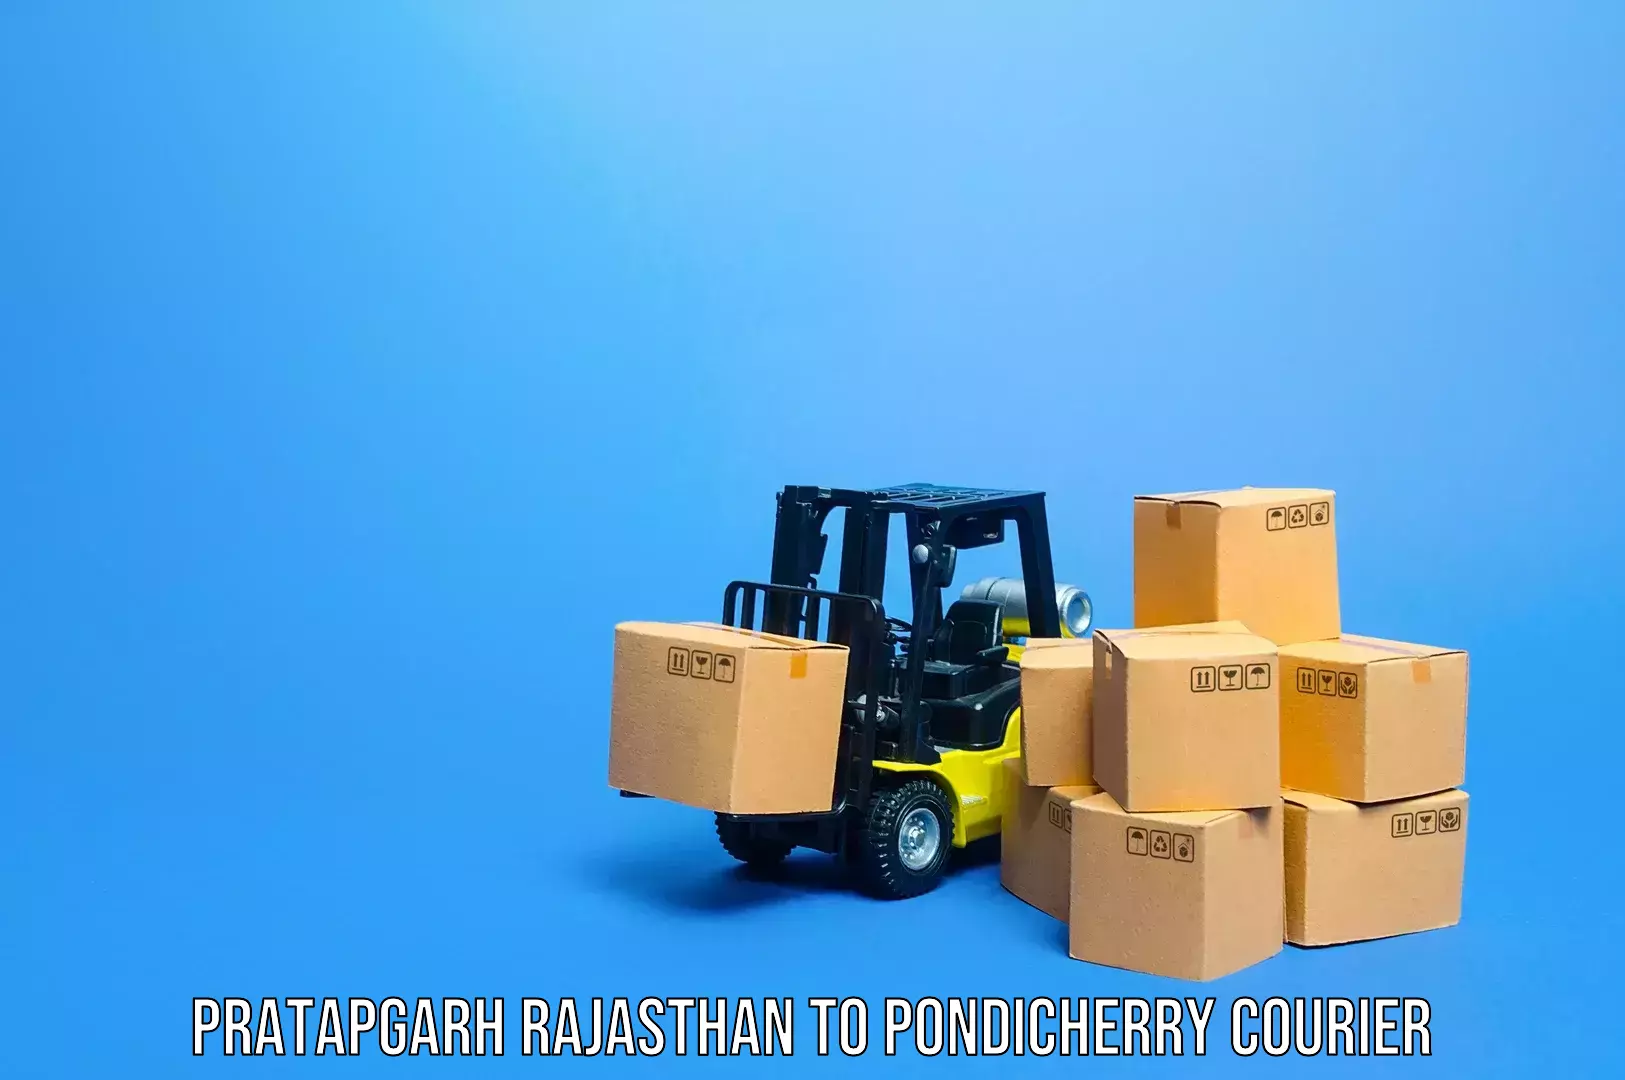 Luggage transit service Pratapgarh Rajasthan to Pondicherry